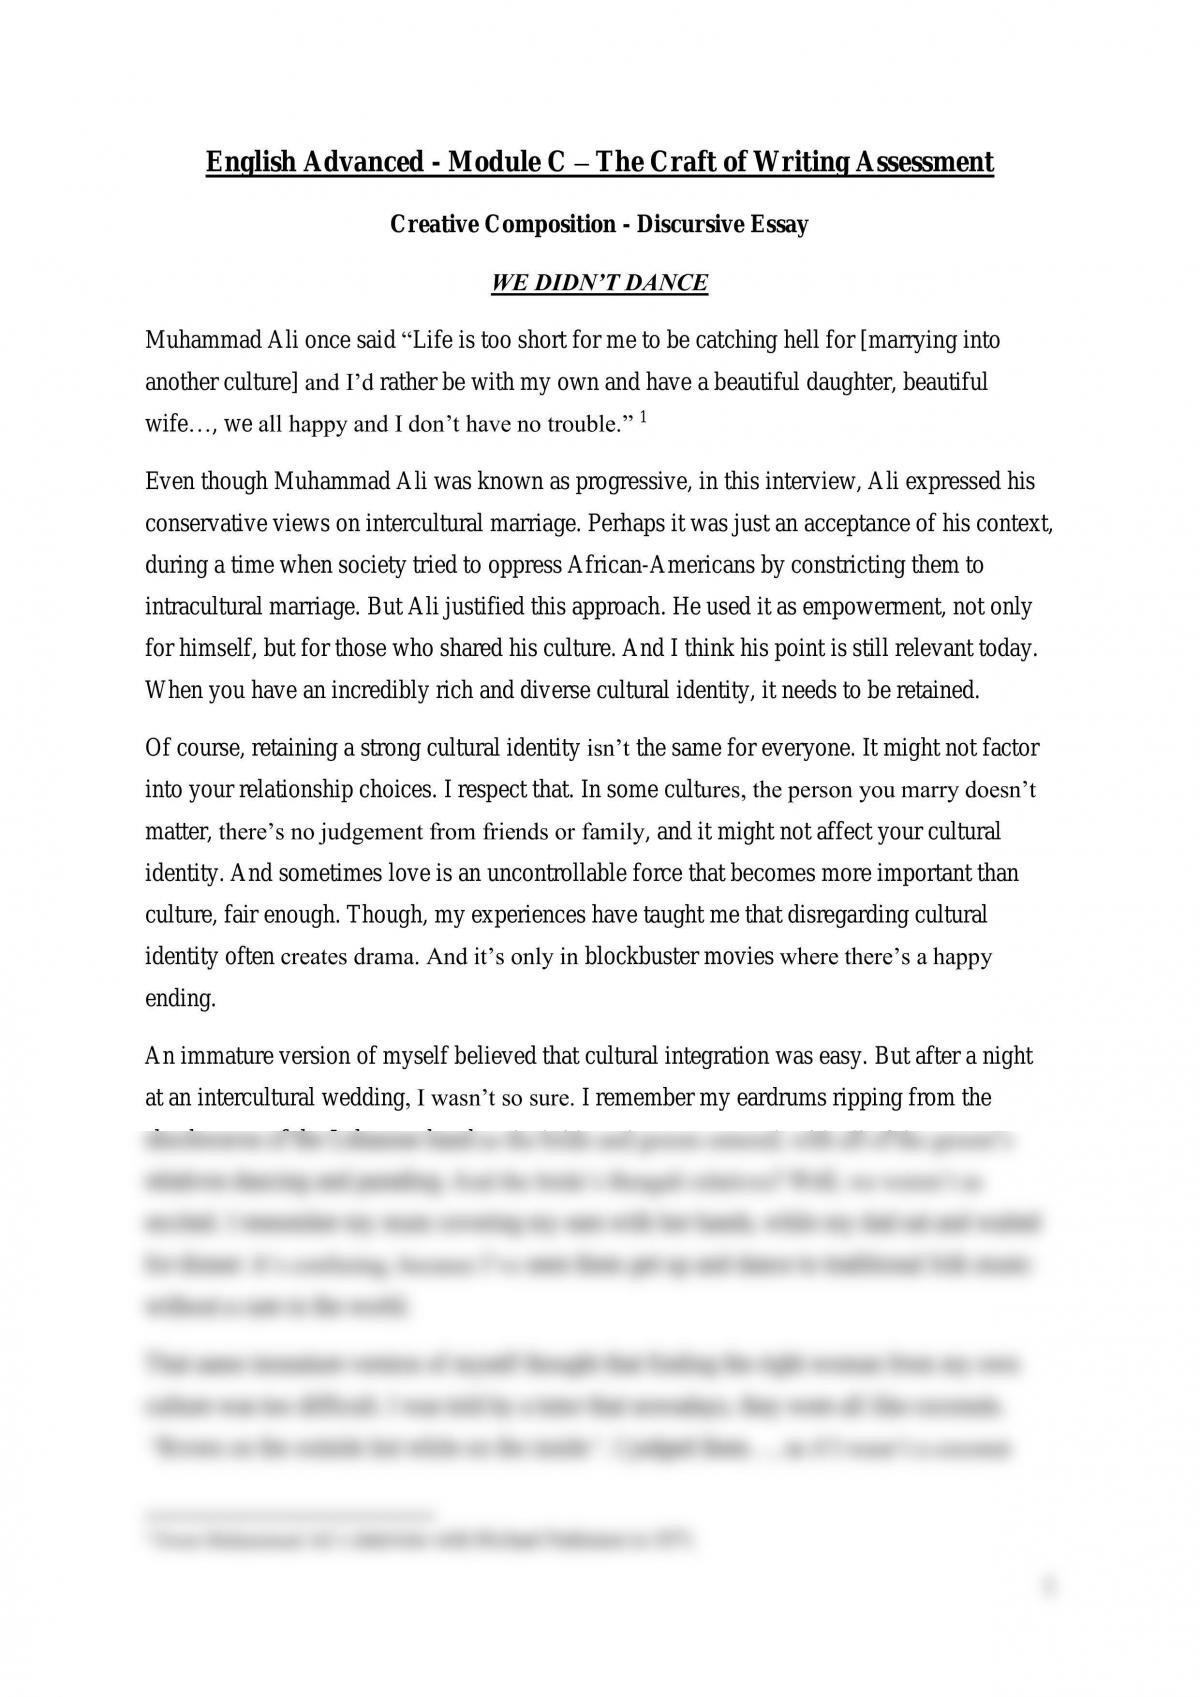 discursive essay sample pdf